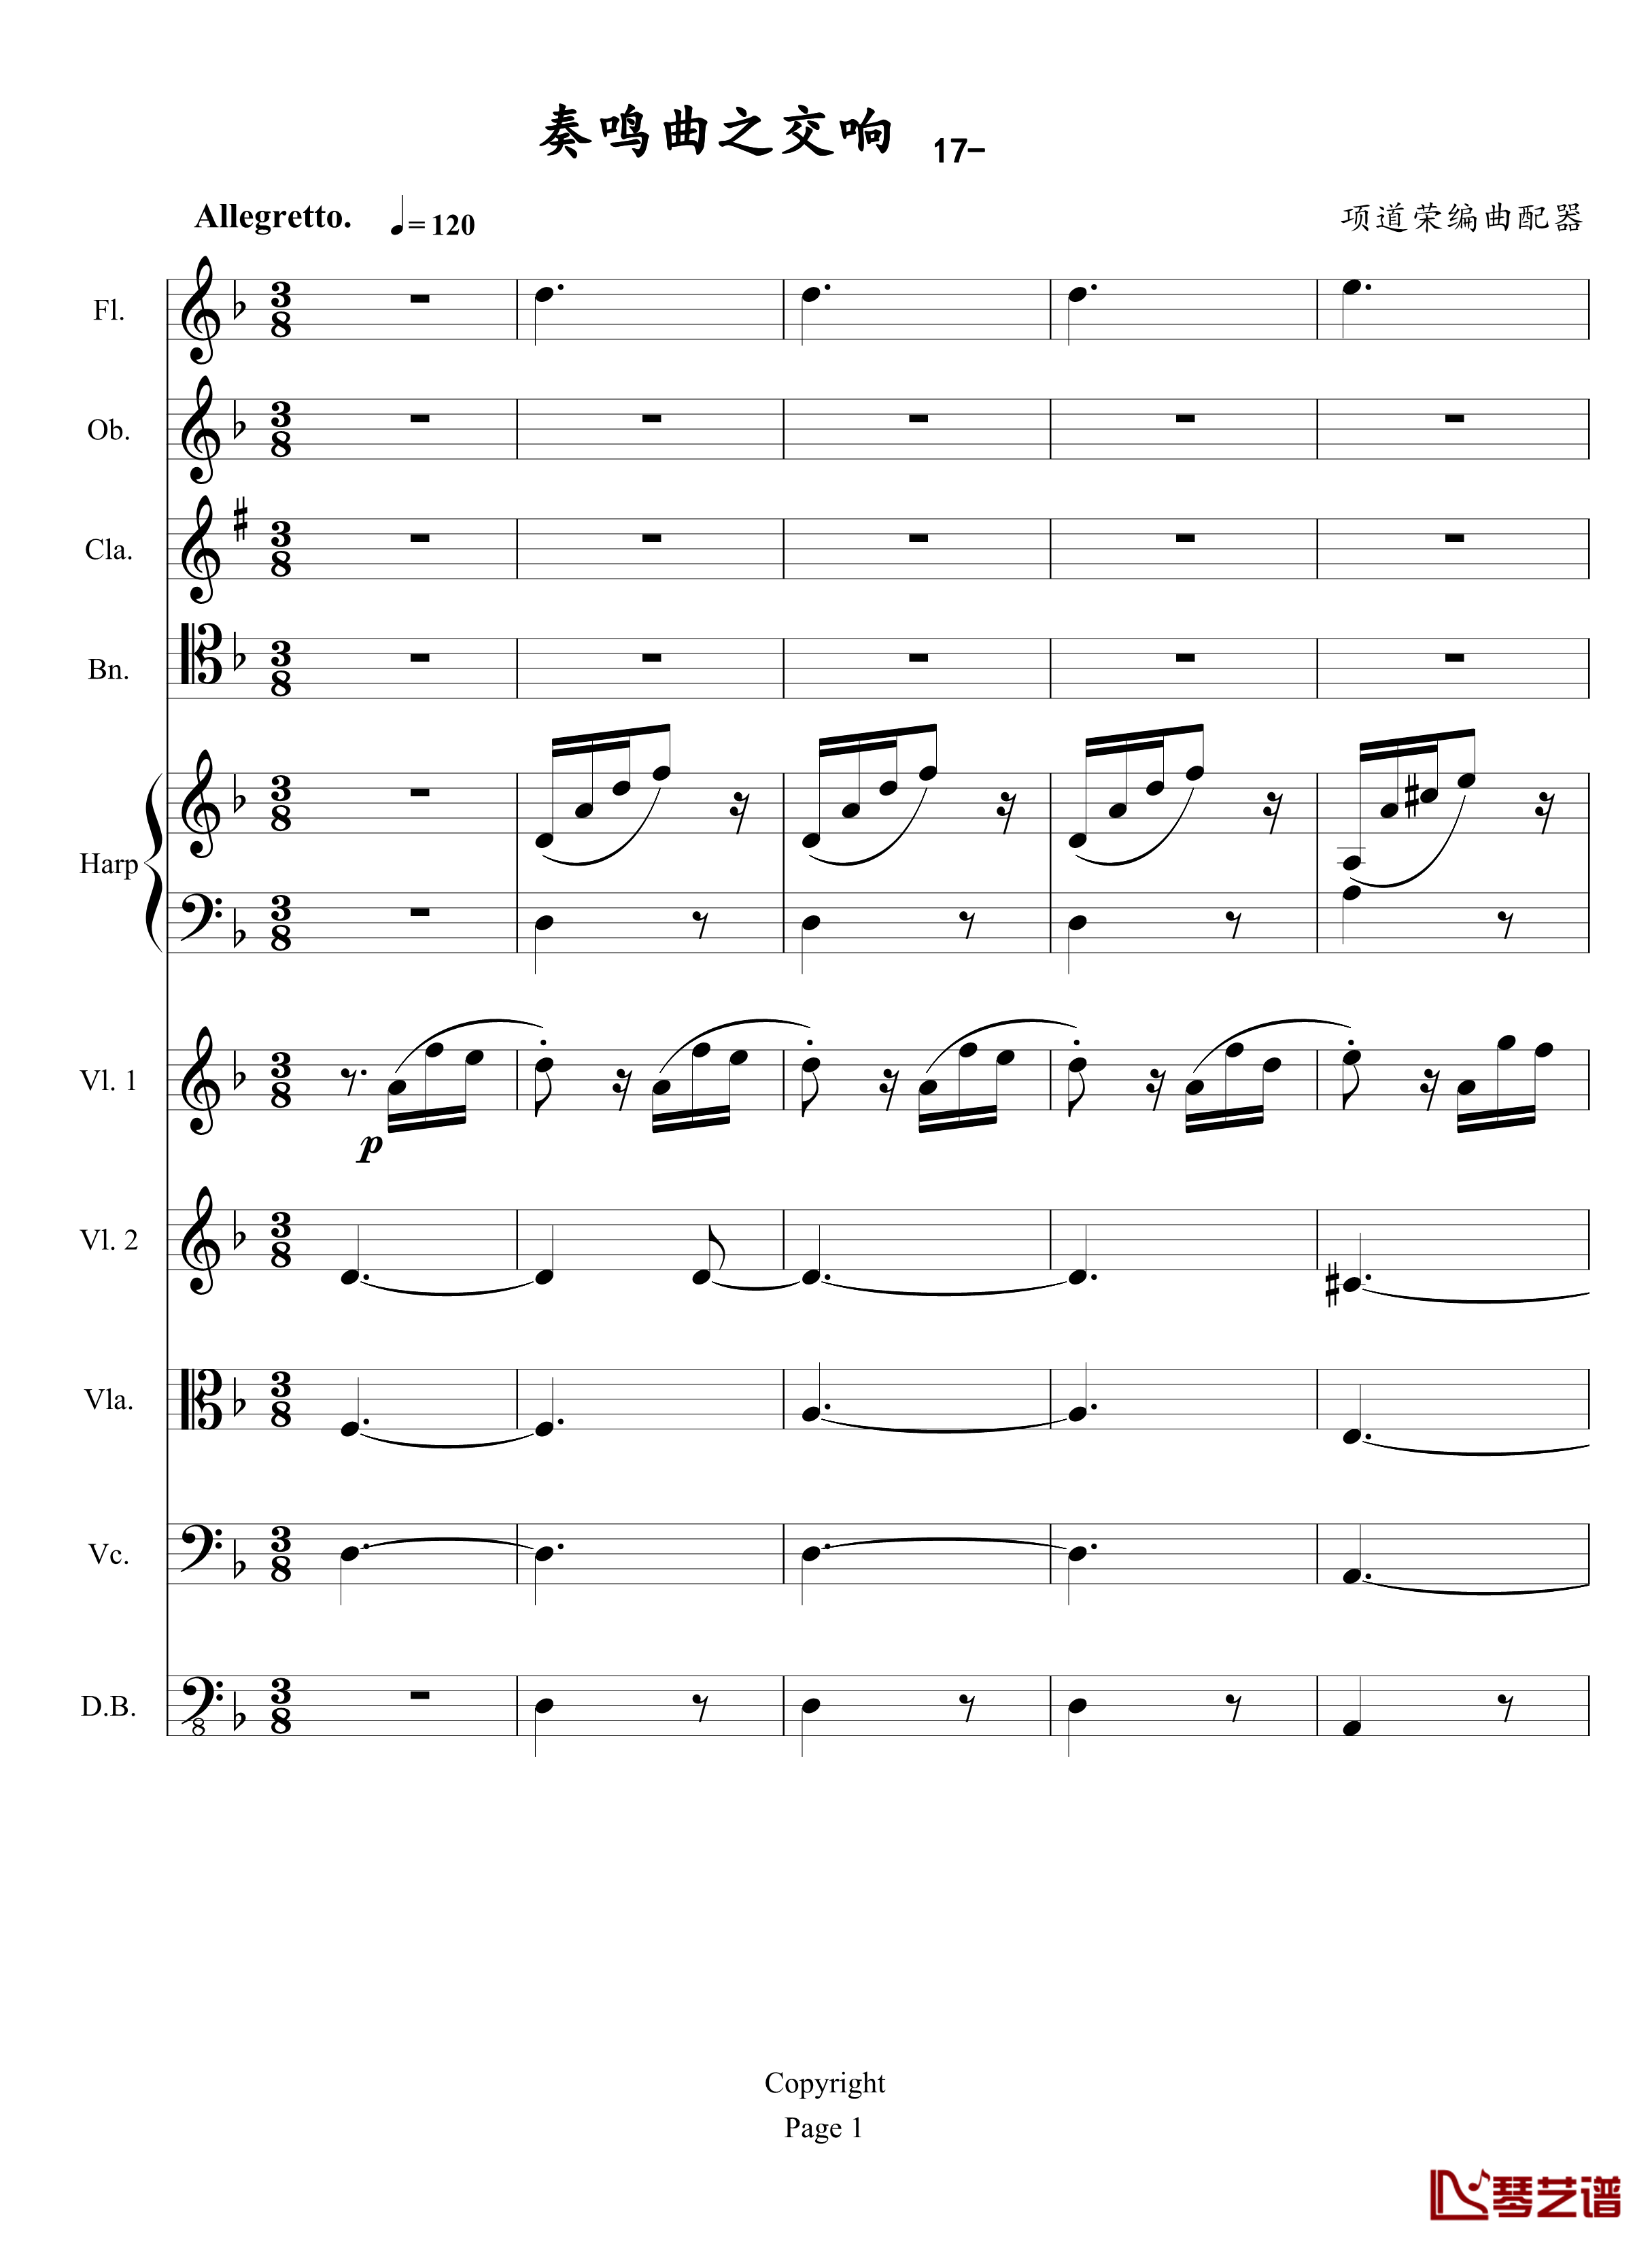 奏鸣曲之交响钢琴谱-第17首-Ⅲ-贝多芬-beethoven1